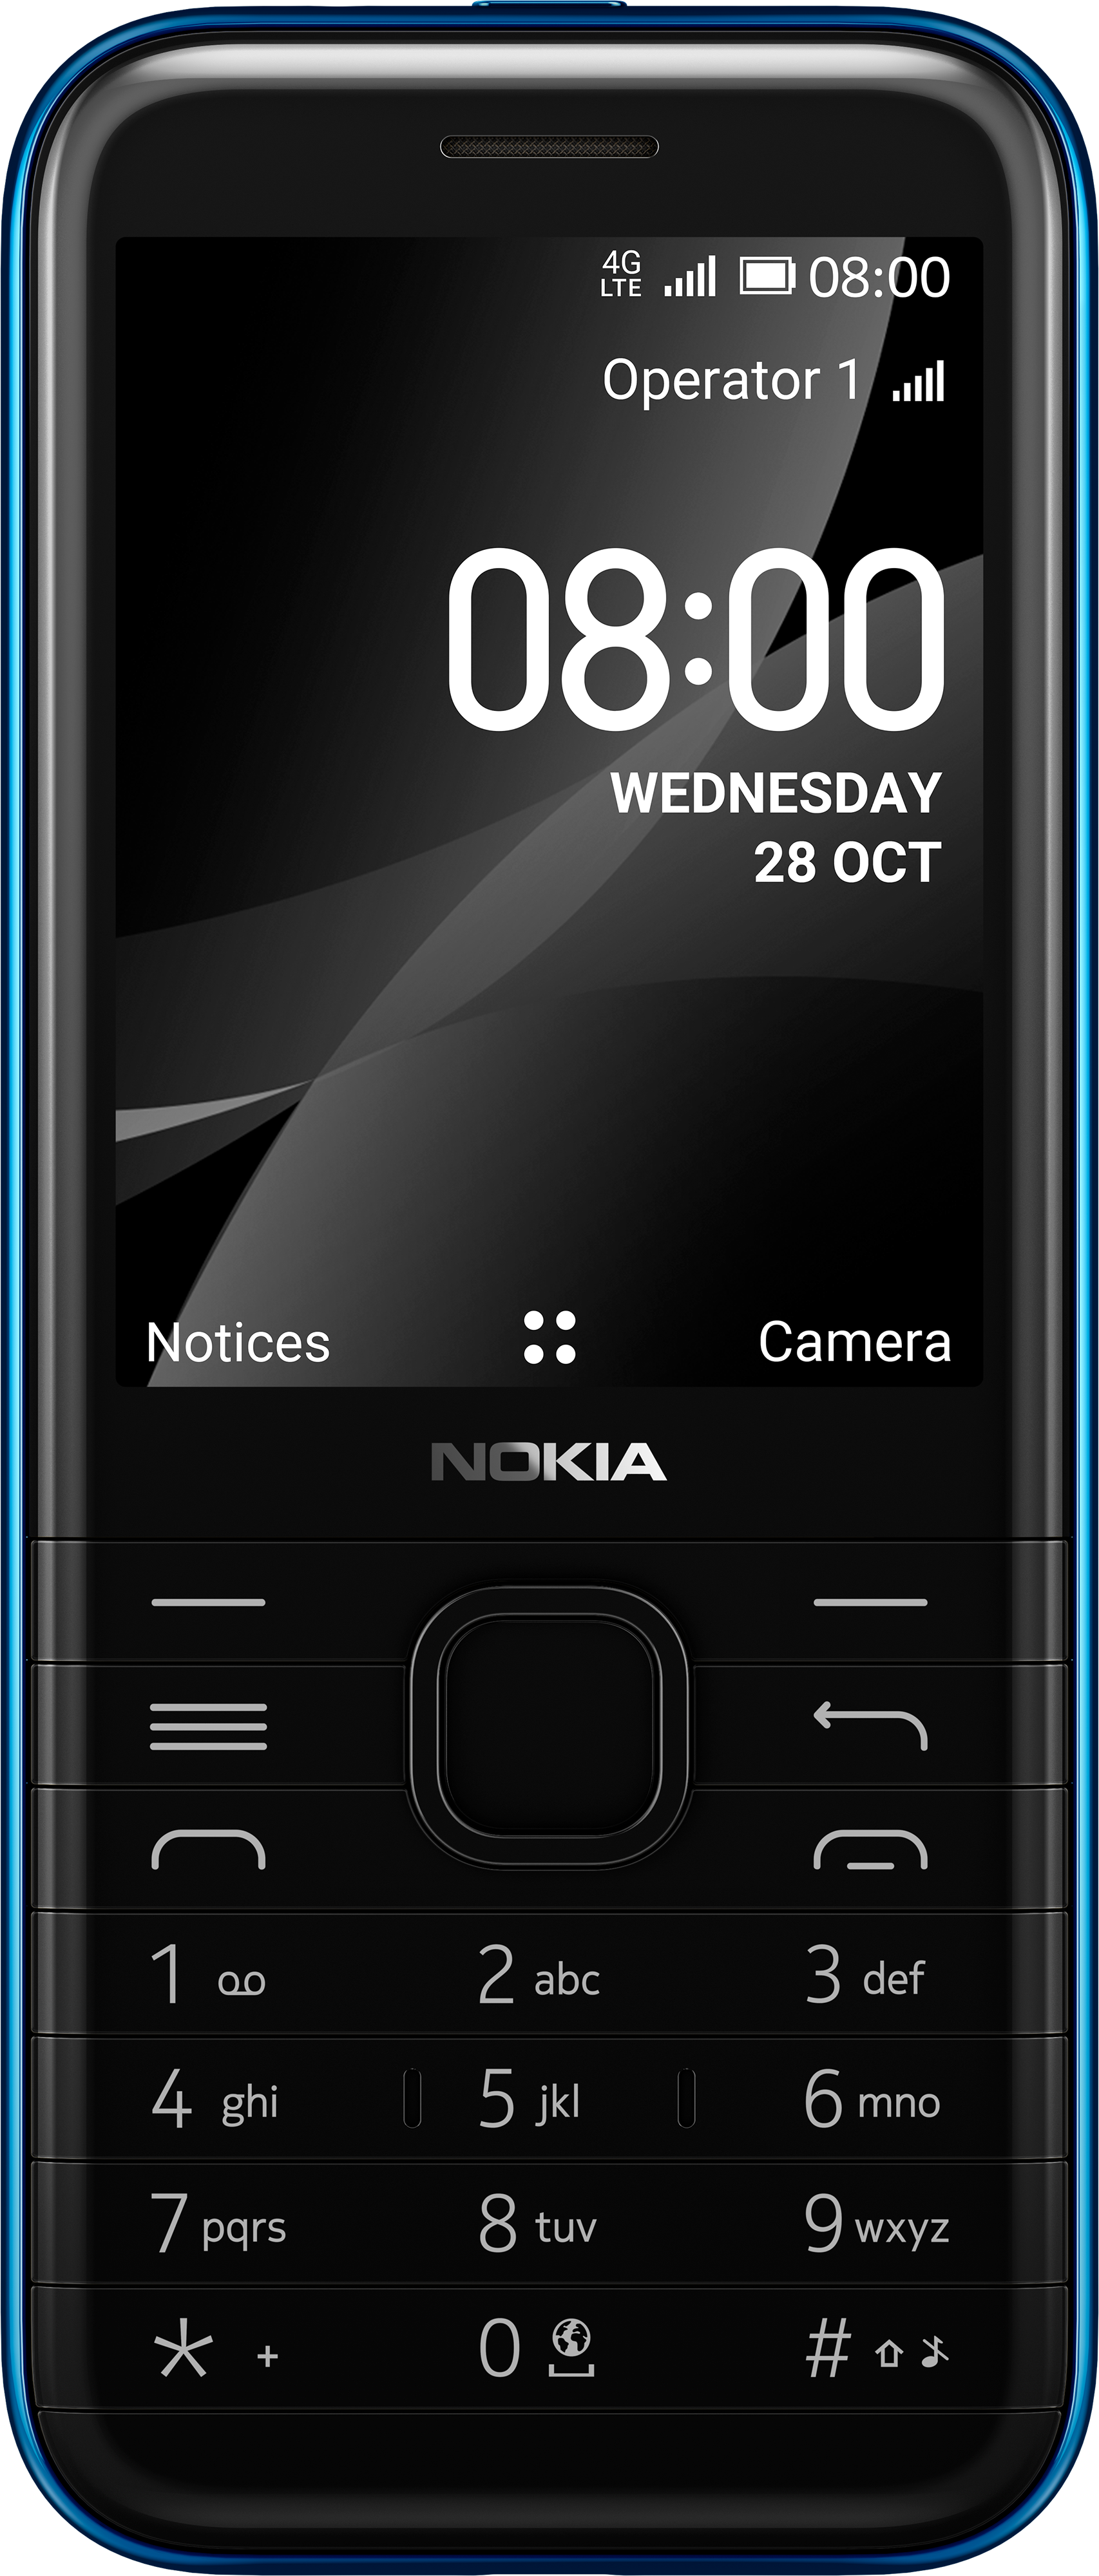 Nokia 8000: Với thiết kế sang trọng và đẳng cấp, Nokia 8000 chắc chắn sẽ thu hút mọi ánh nhìn của bạn. Chiếc điện thoại này không chỉ có công nghệ tiên tiến mà còn có tính năng cực kỳ đa dạng. Hãy tận hưởng những giây phút tuyệt vời khi sử dụng Nokia